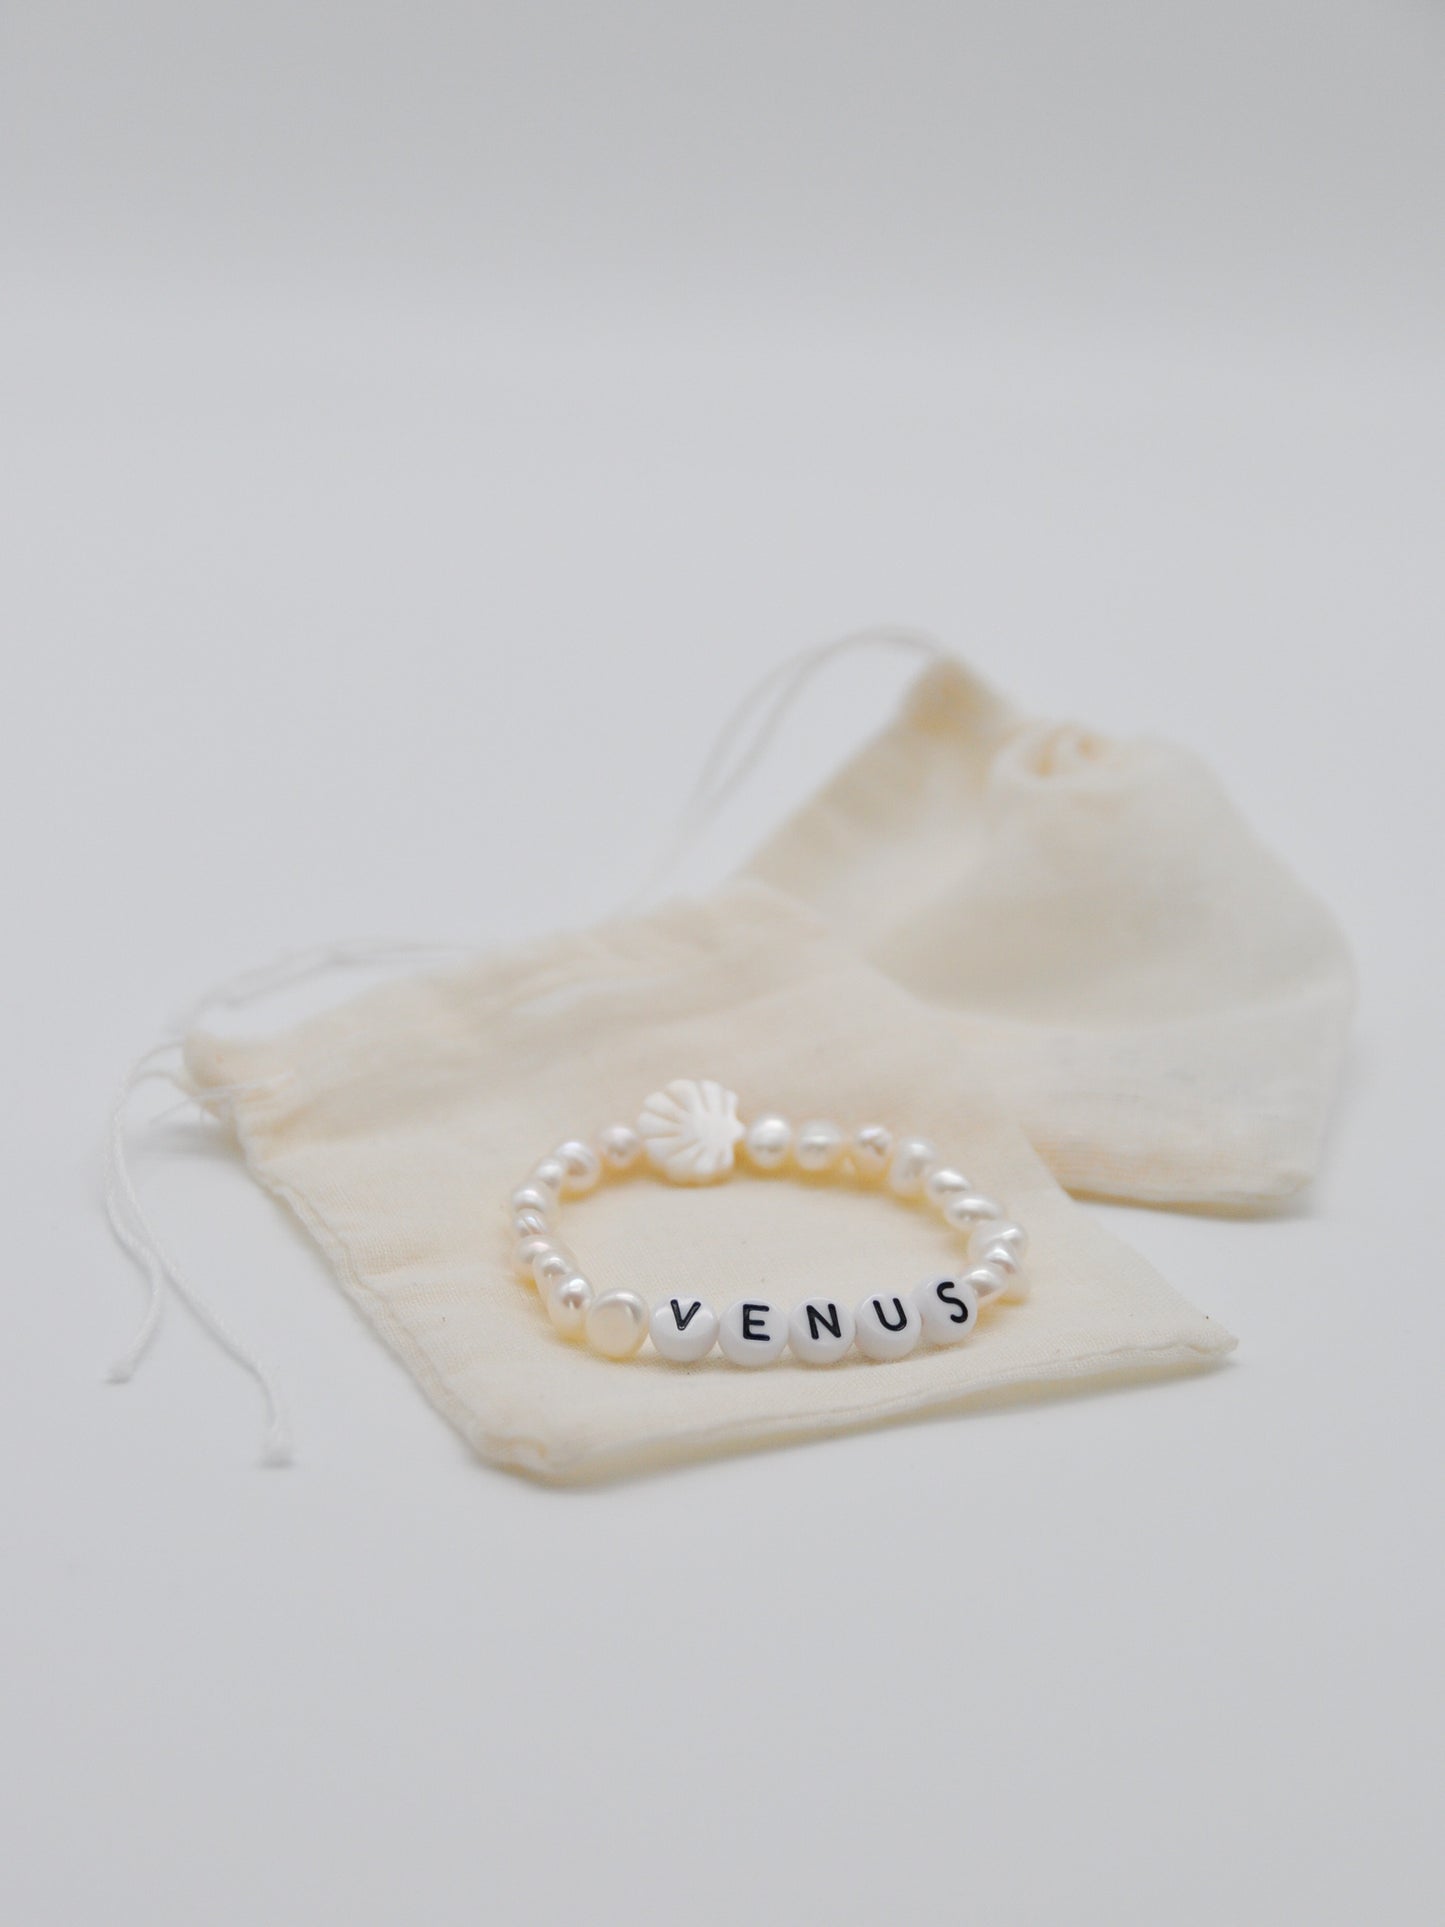 Venus Armband - Vulva Shop